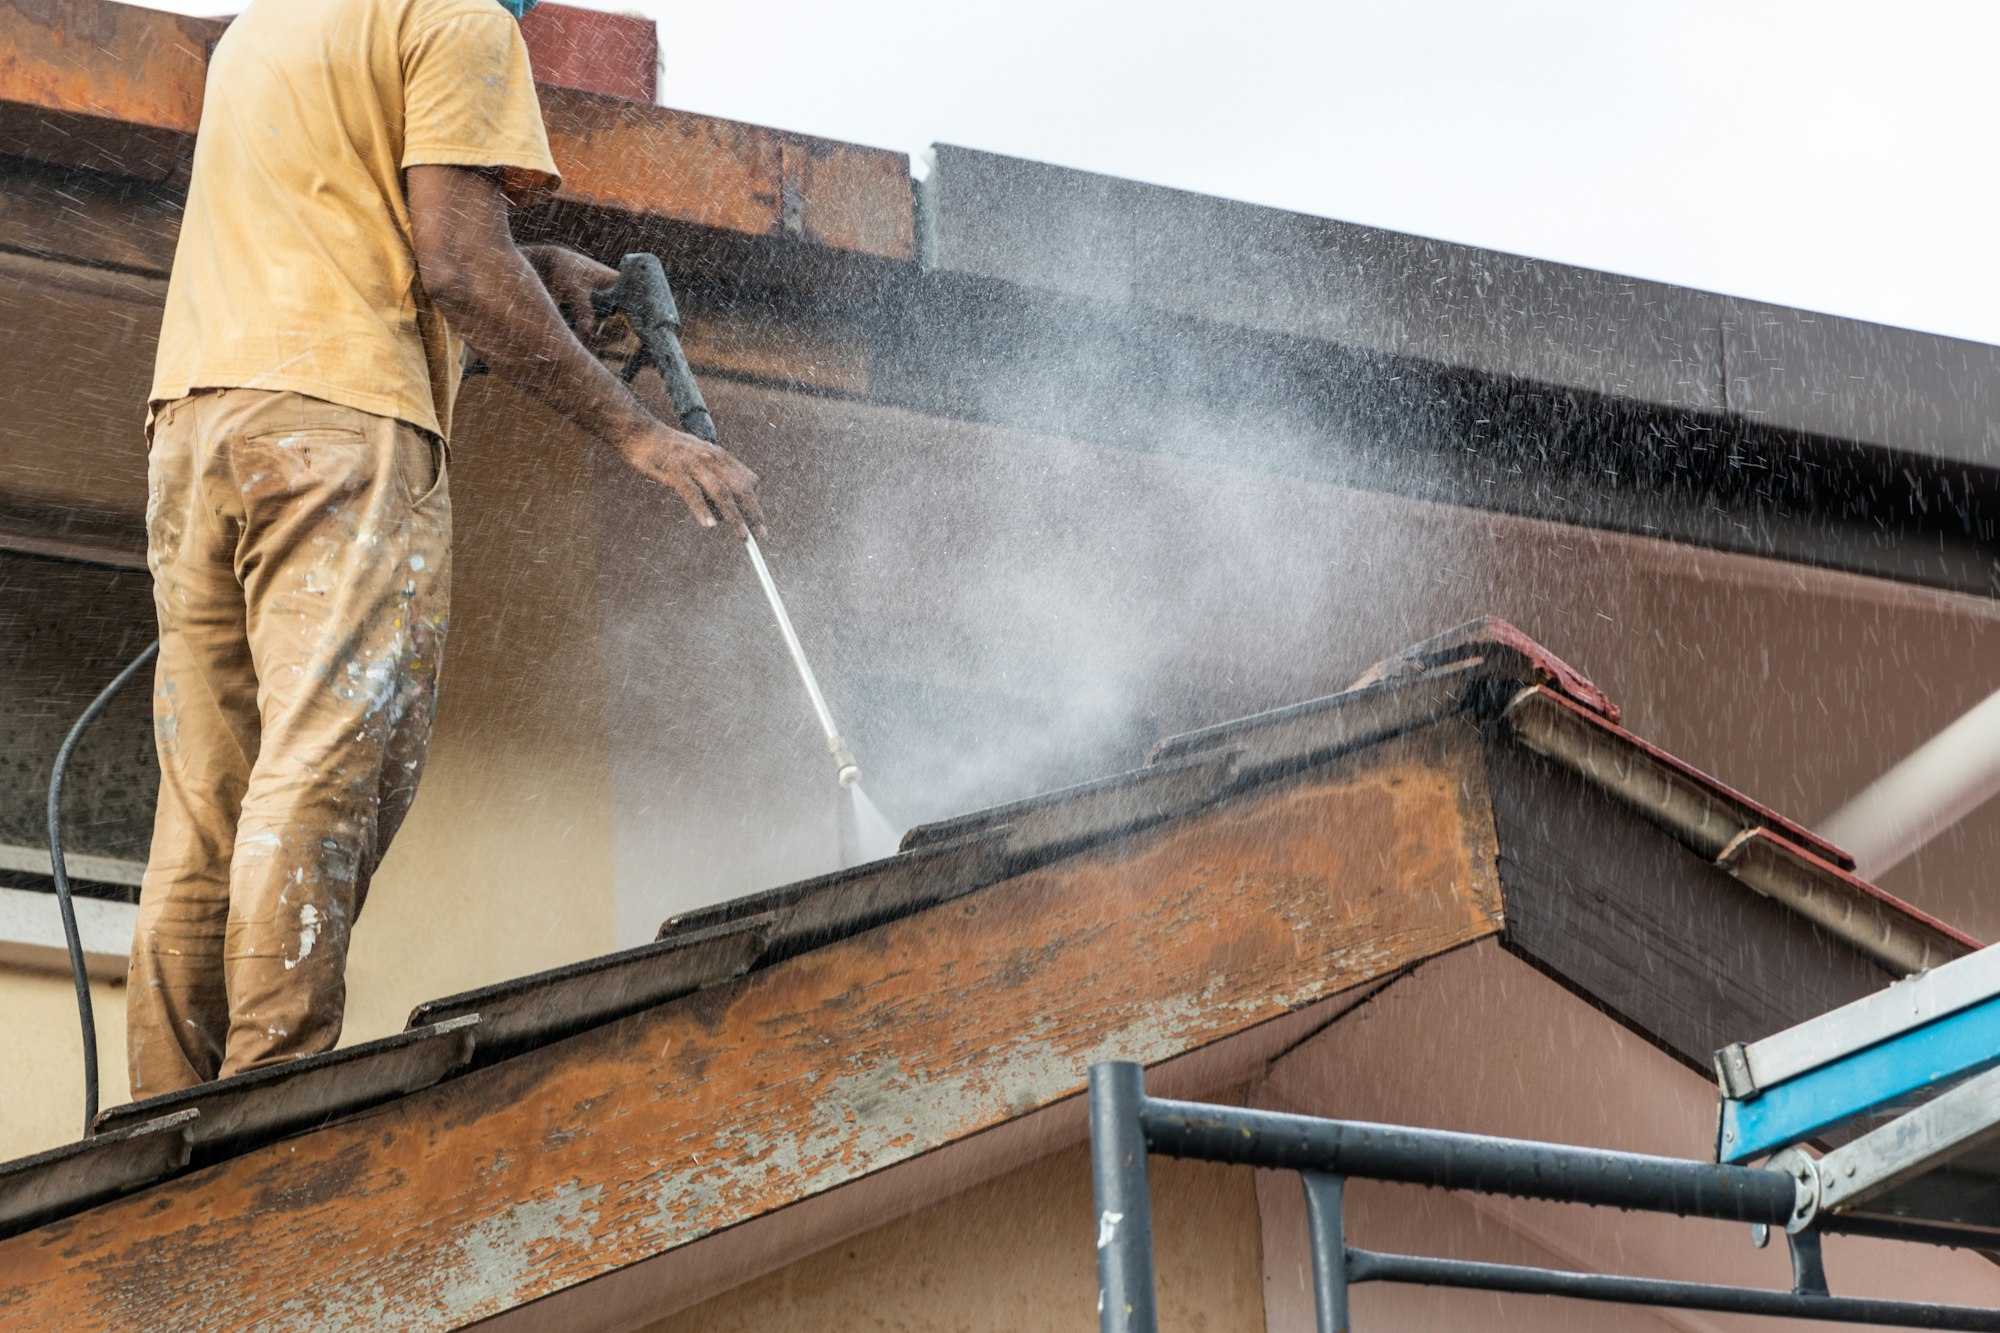 Arbetare som använder högtrycksvattensprutpistol för att tvätta och rengöra smuts från takpannor